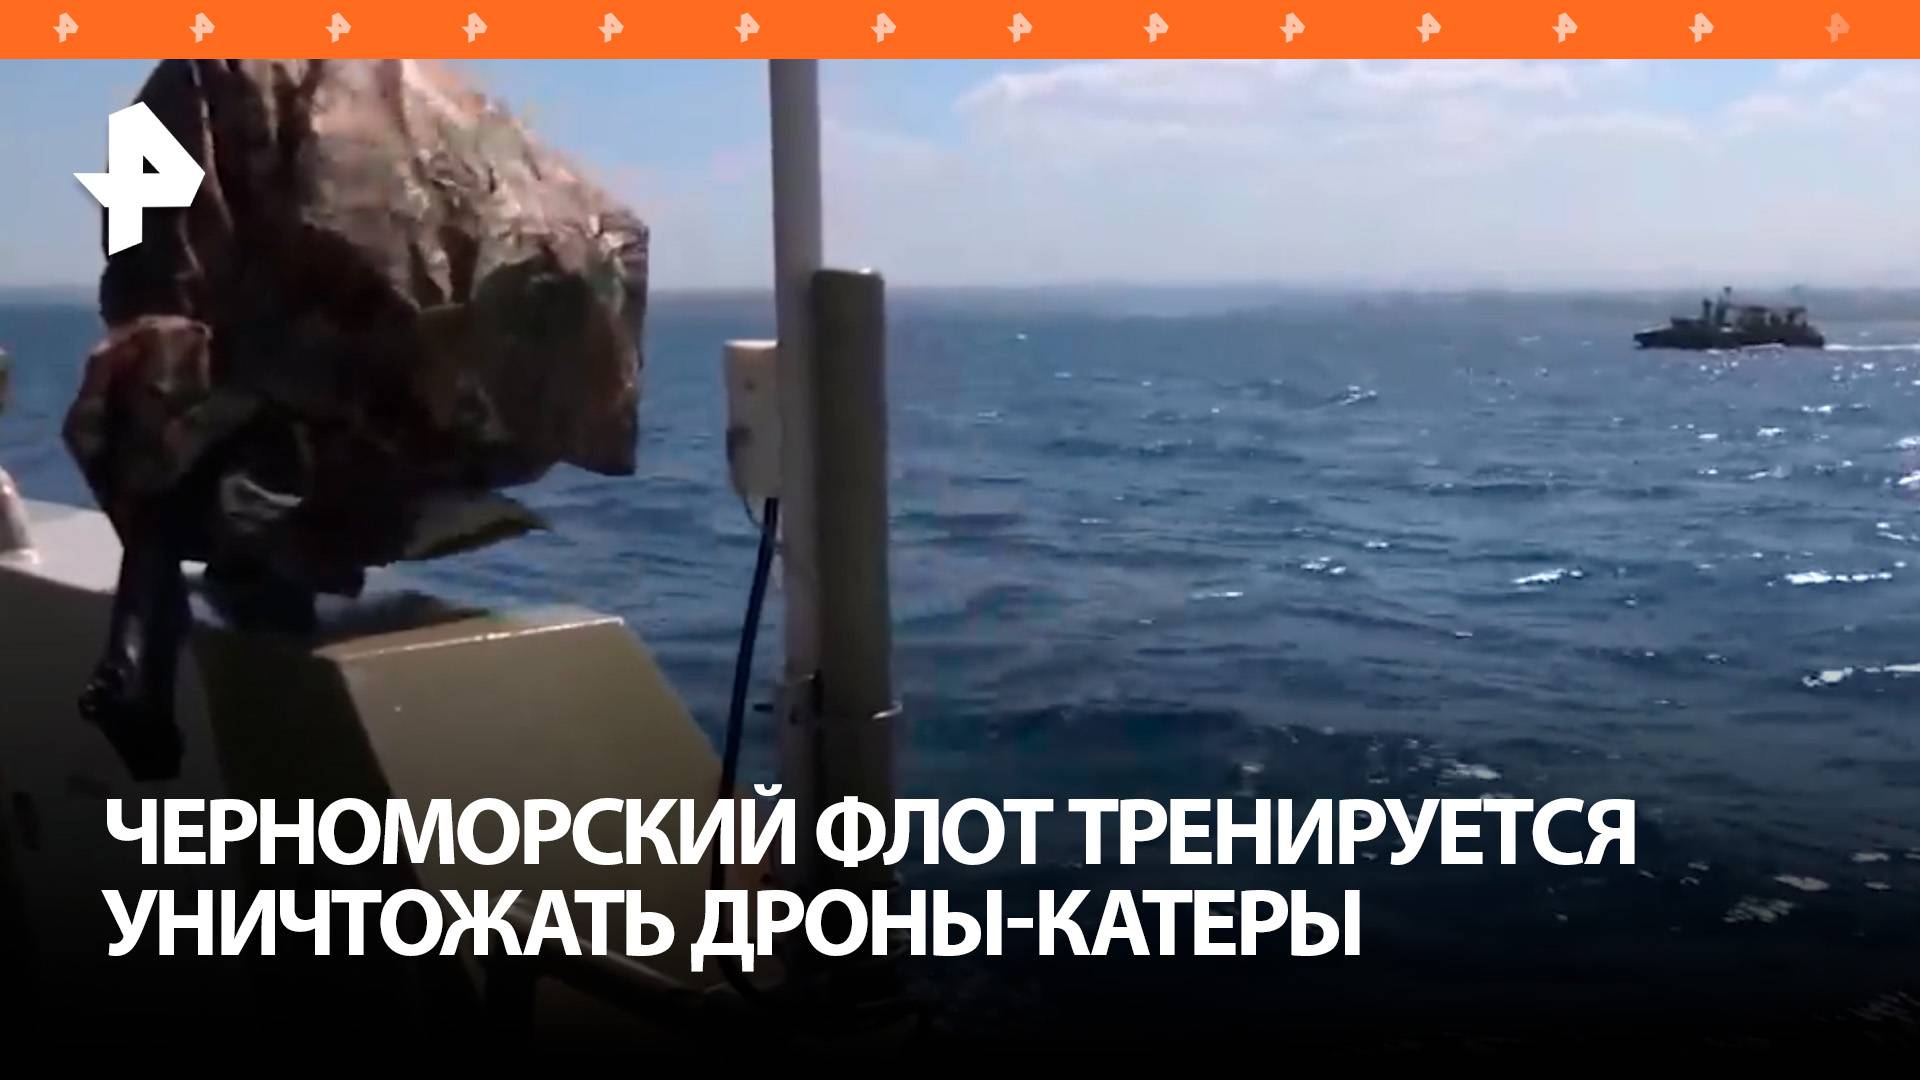 Военнослужащие Черноморского флота провели тренировку по борьбе с атаками безэкипажных катеров